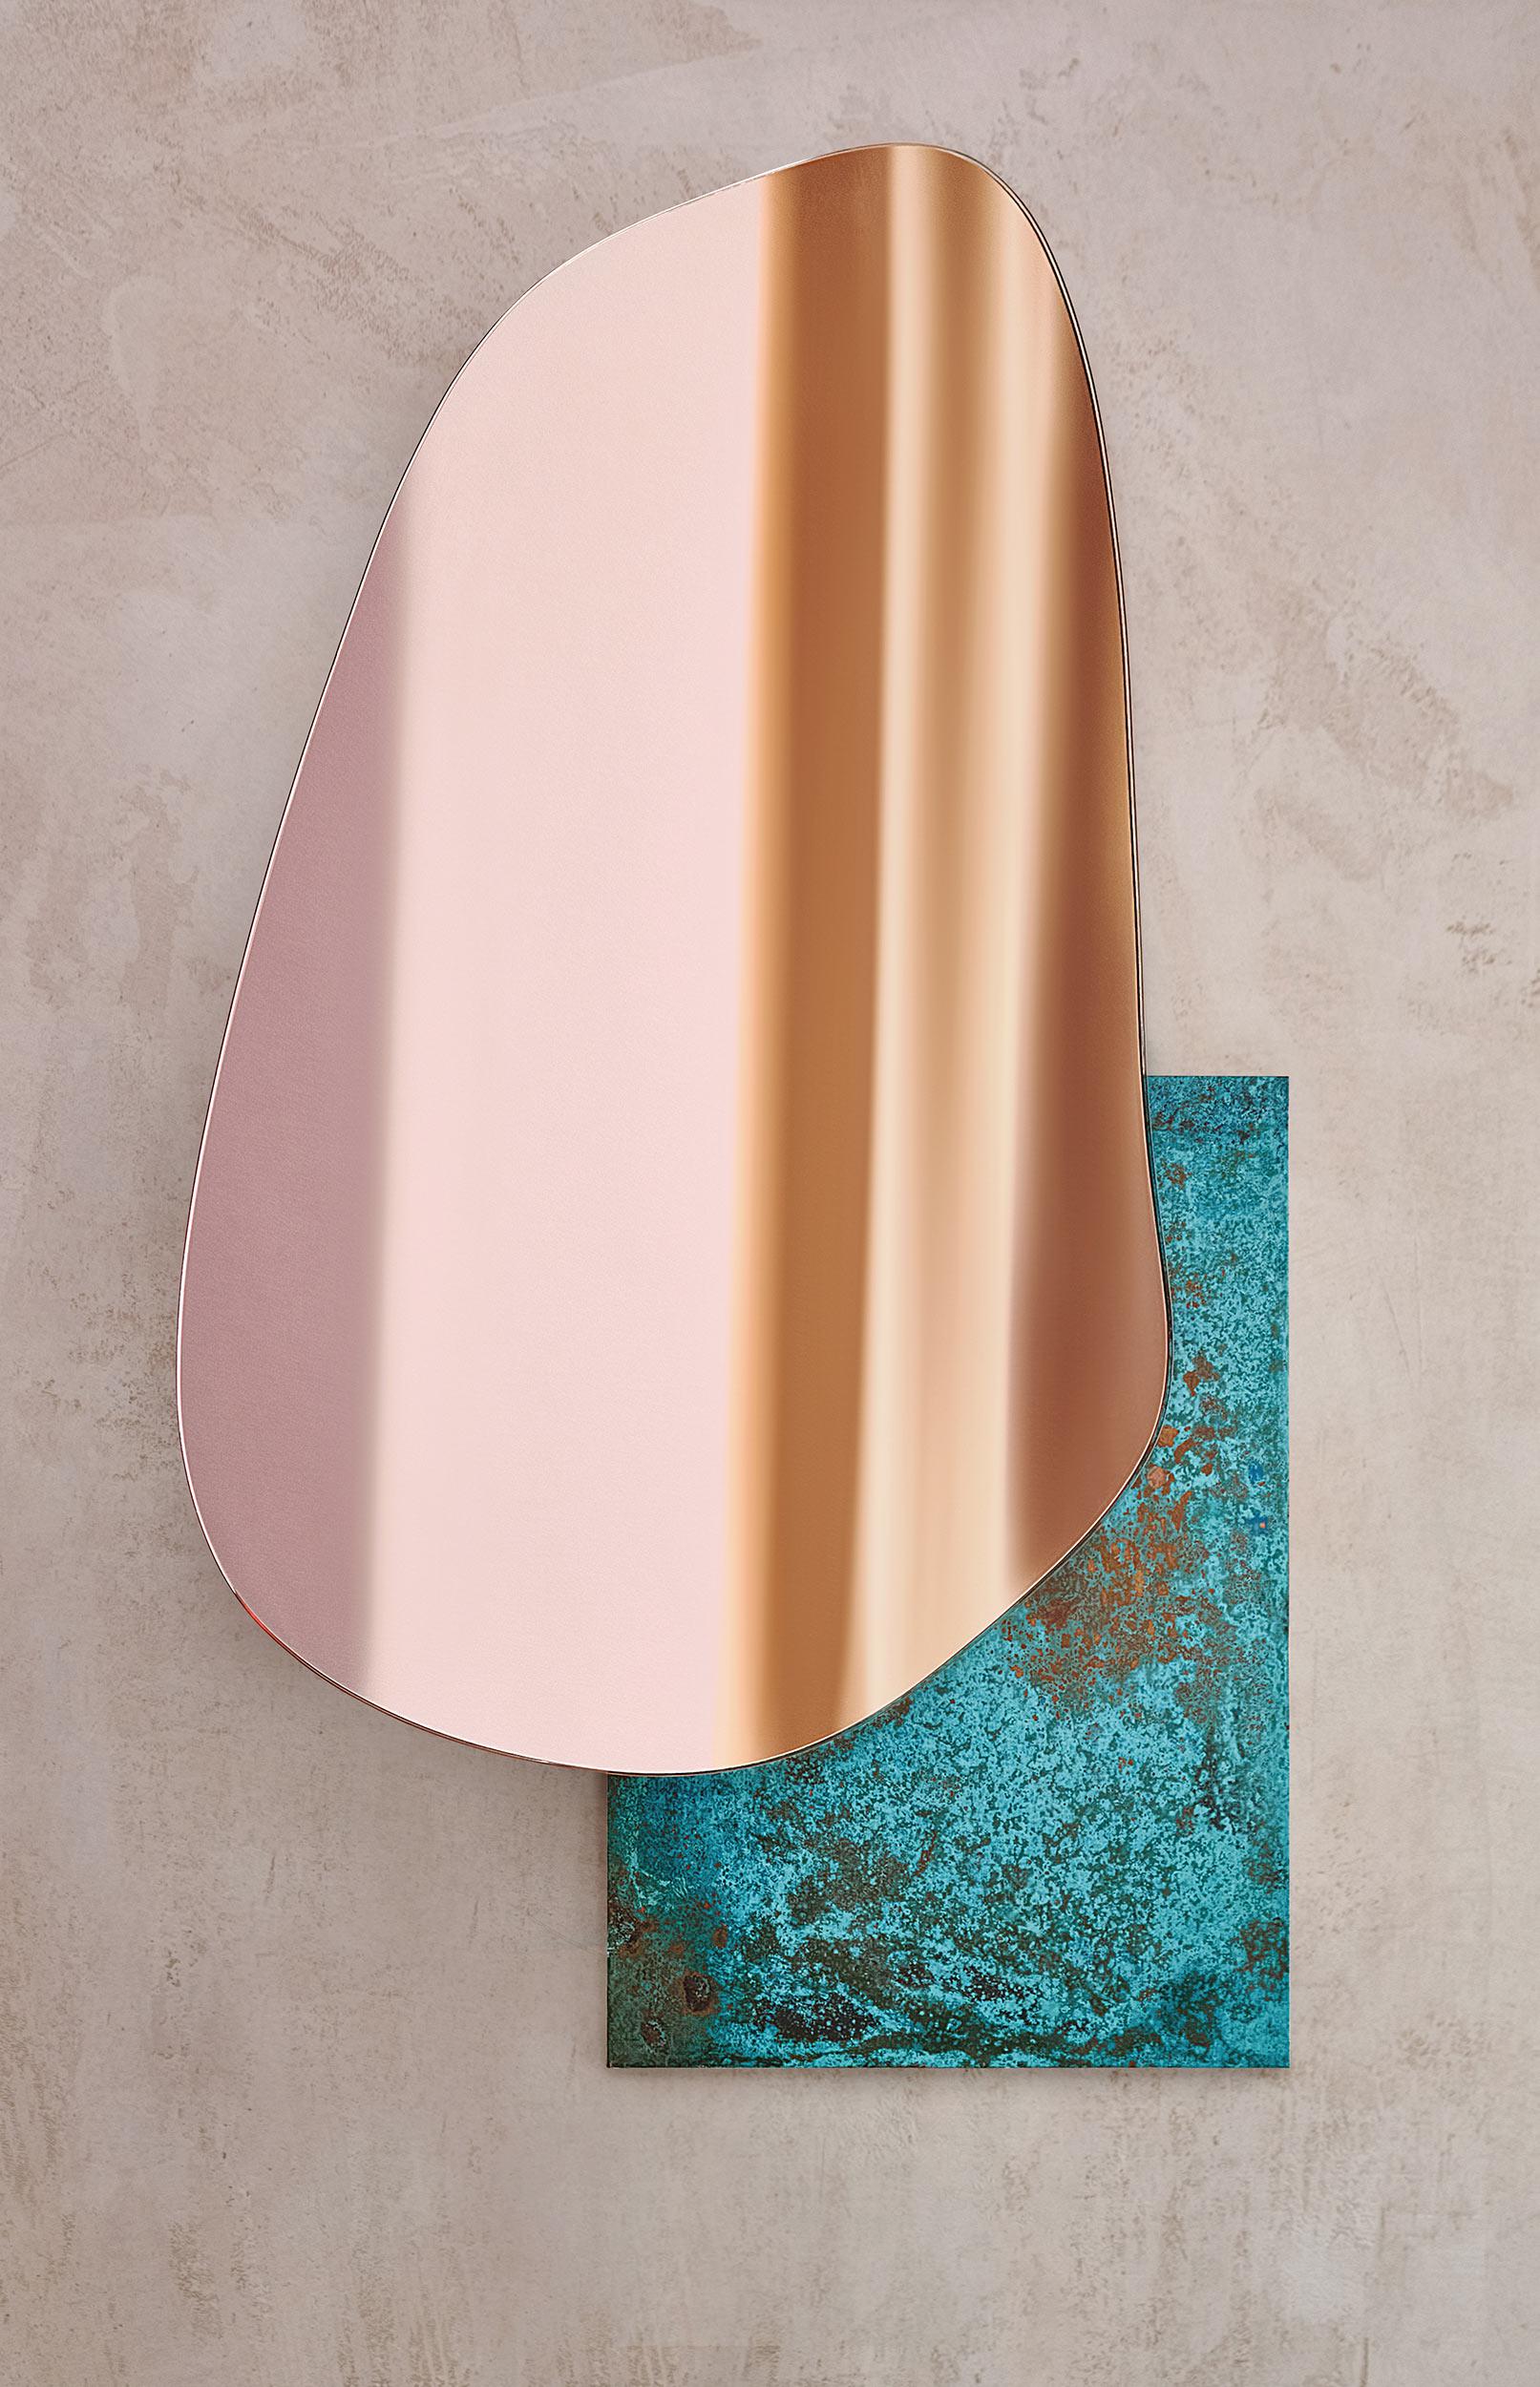 Moderner seeseitiger wandspiegel von NOOM
Gestalter: Maryna Dague & Nathan Baraness

Das Modell auf dem Bild:
Nummer 3 
Sockel aus oxidiertem Kupfer und kupferfarbenem Spiegel

